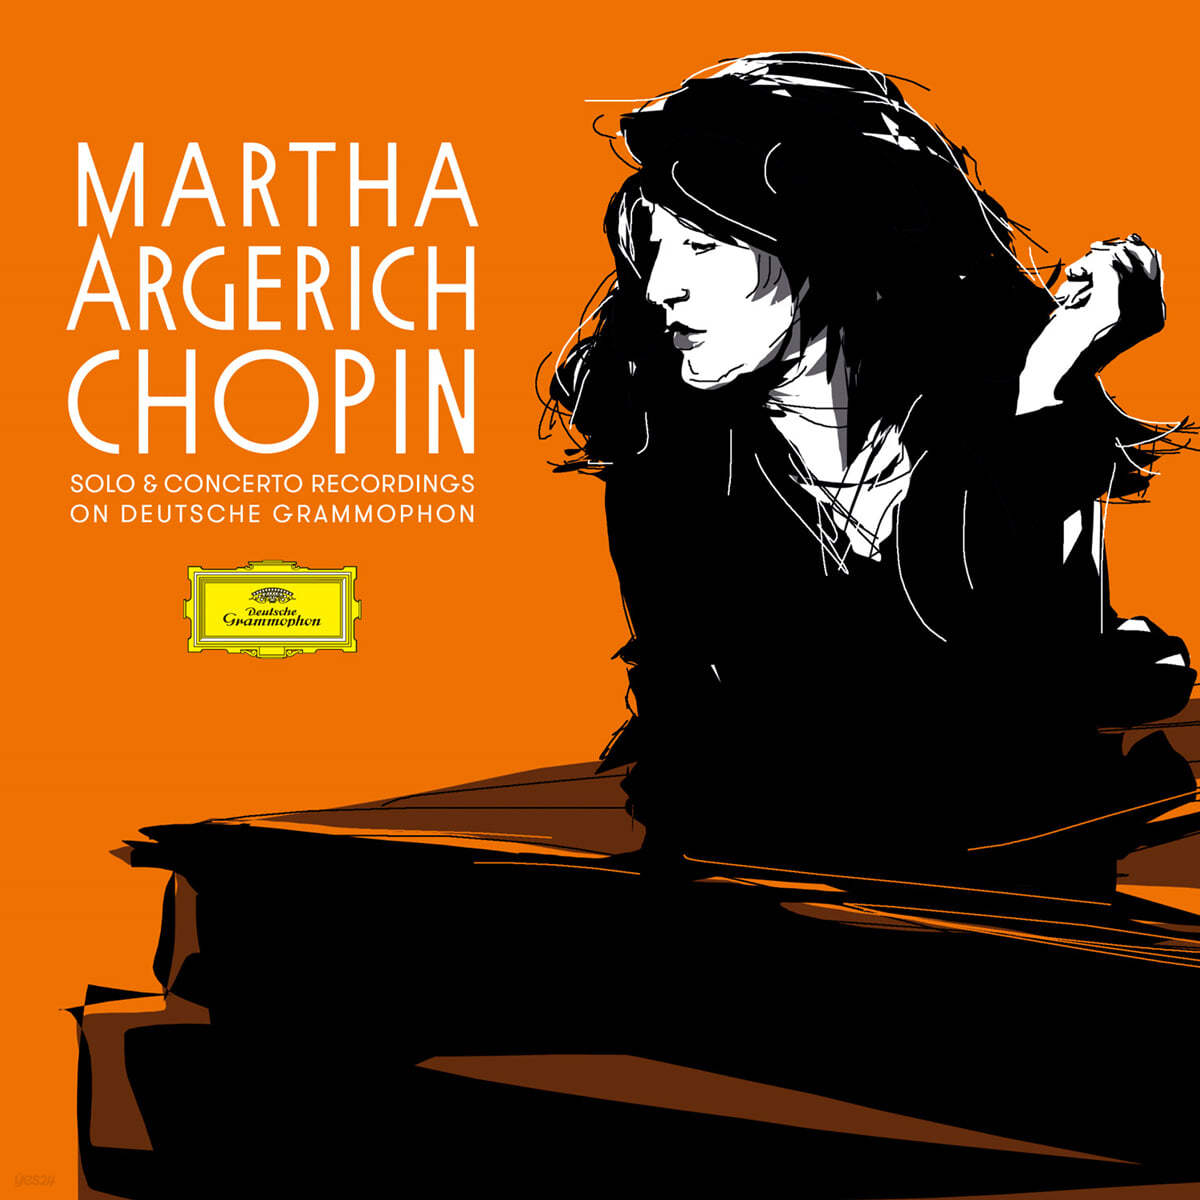 마르타 아르헤리치가 연주하는 쇼팽 (Martha Argerich: Chopin Solo and Concerto Recordings) [5LP] 